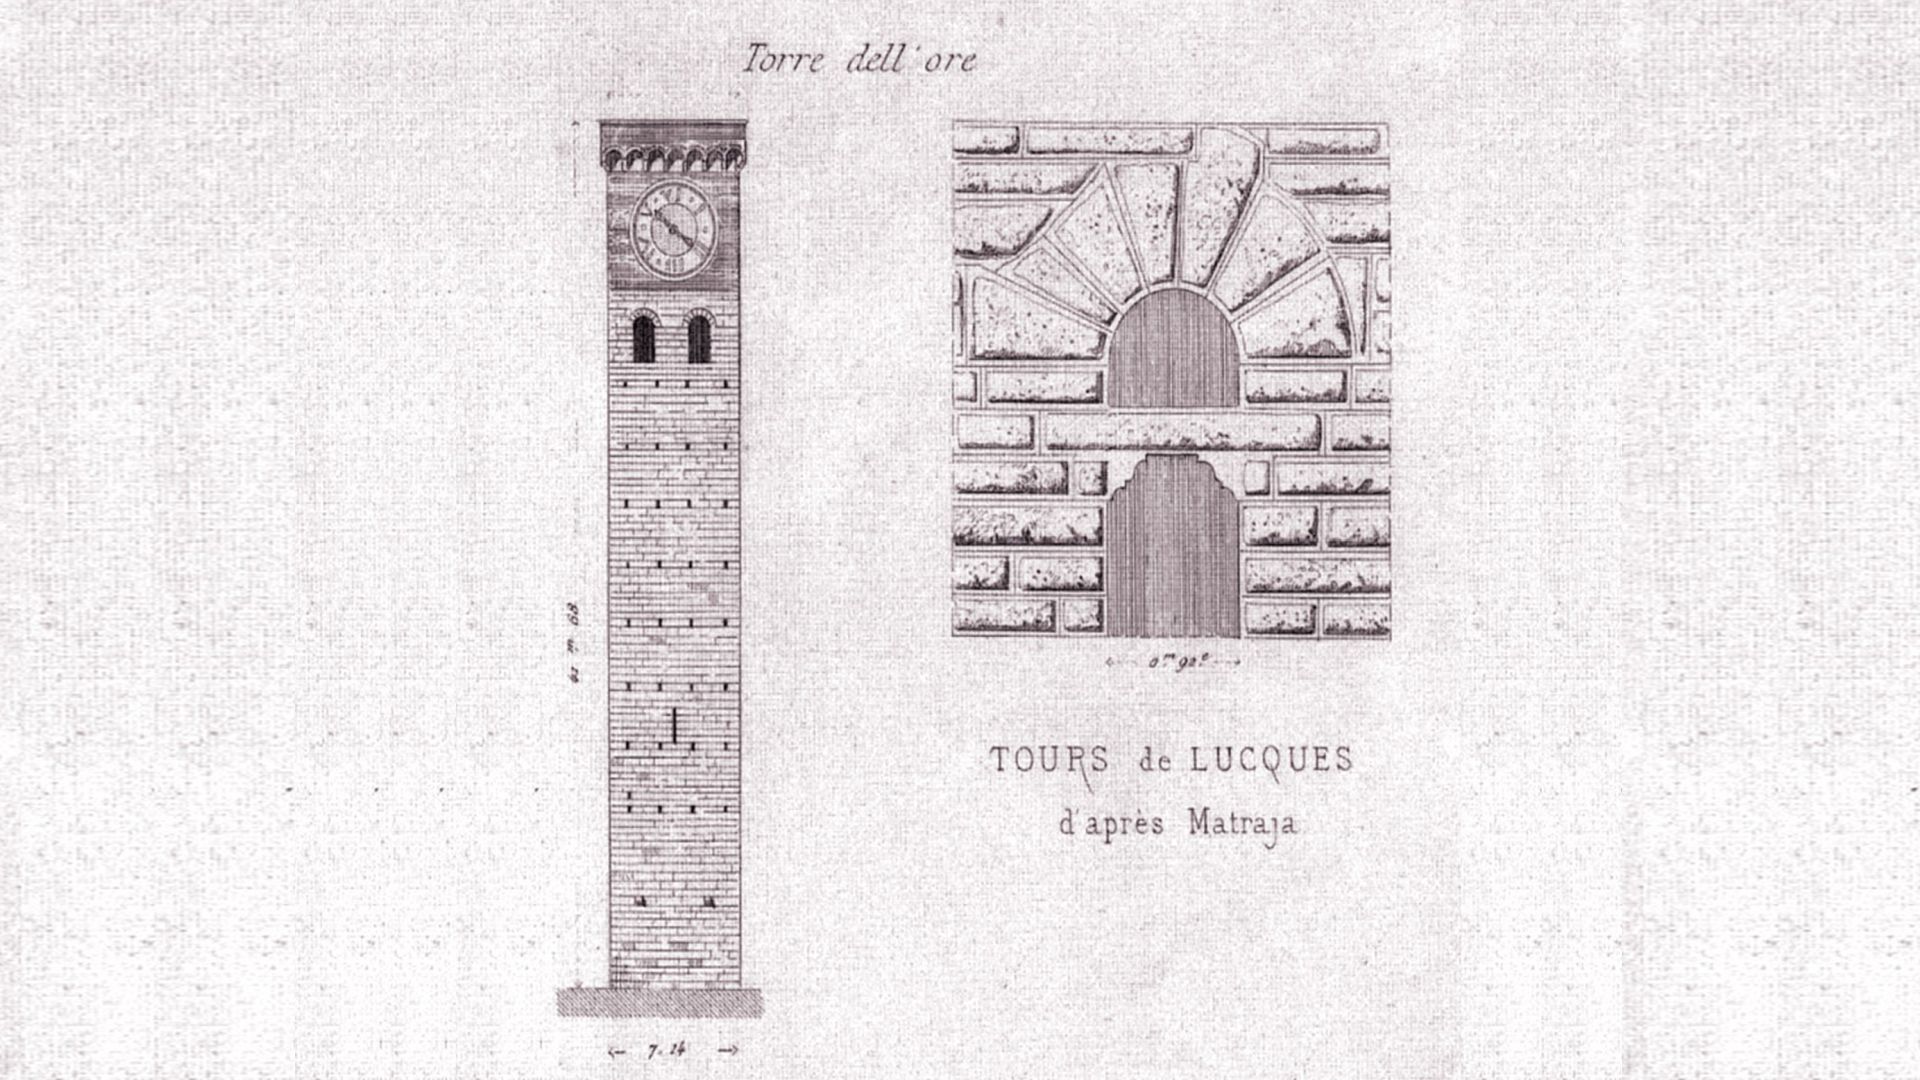 disegno antico della torre delle ore